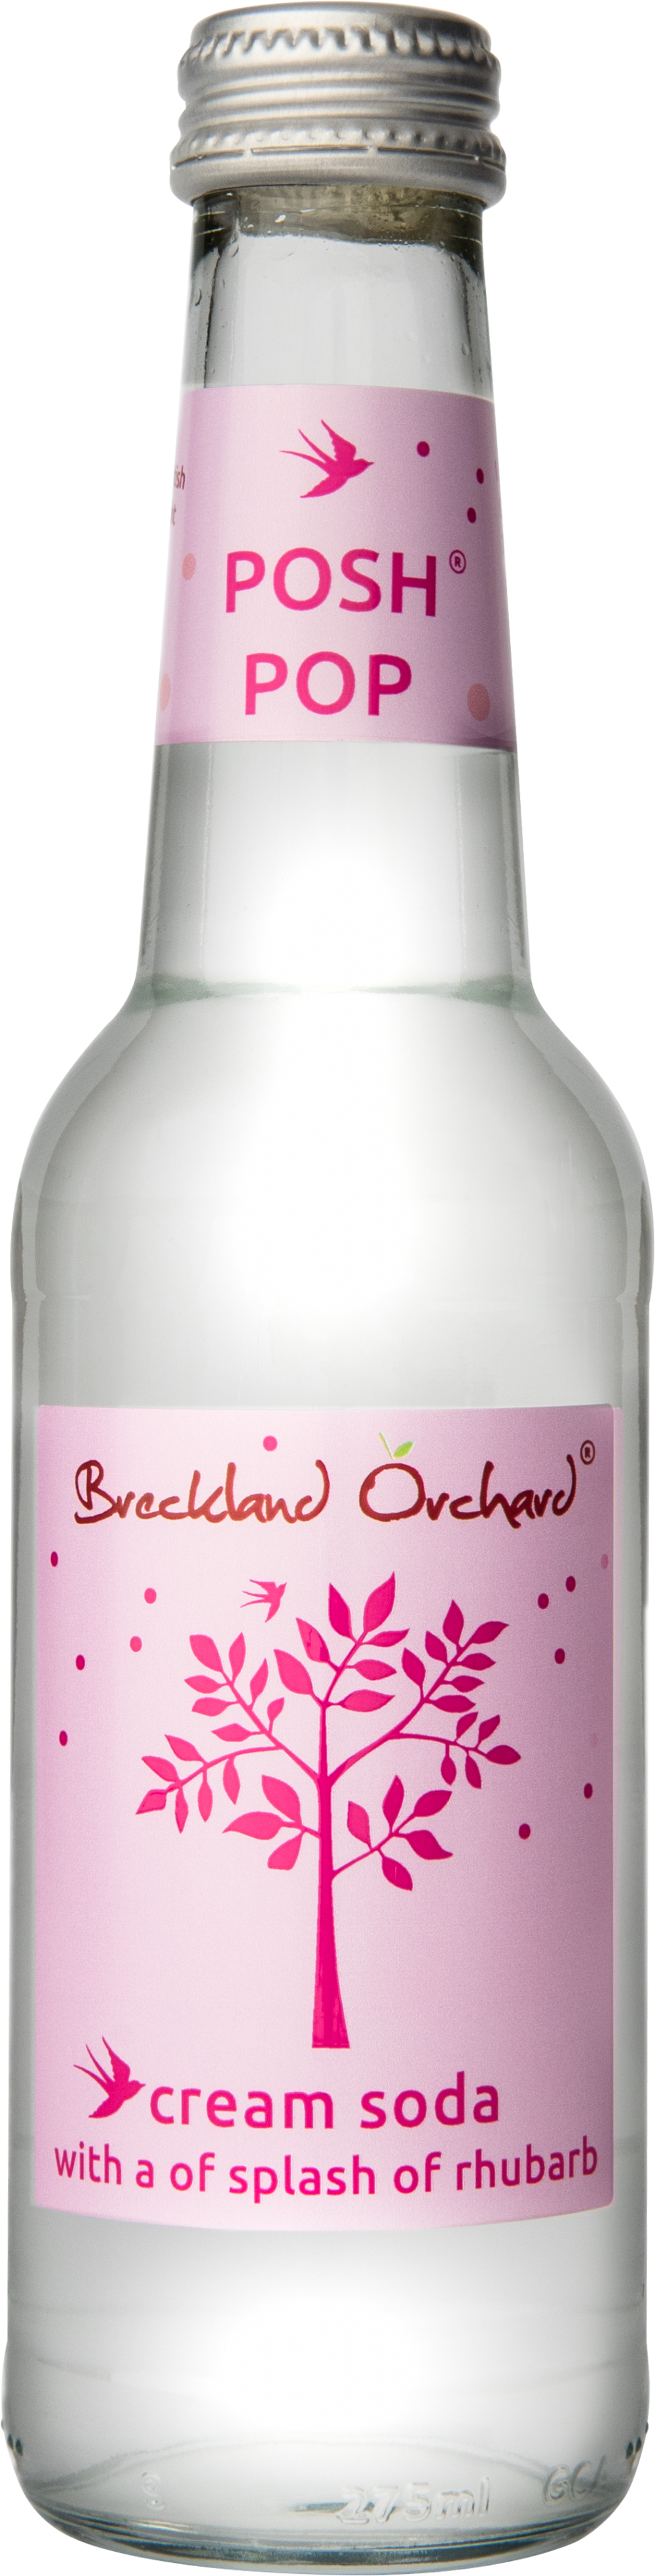 BRECKLAND ORCHARD Posh Pop - Cream Soda / Rhubarb 275ml